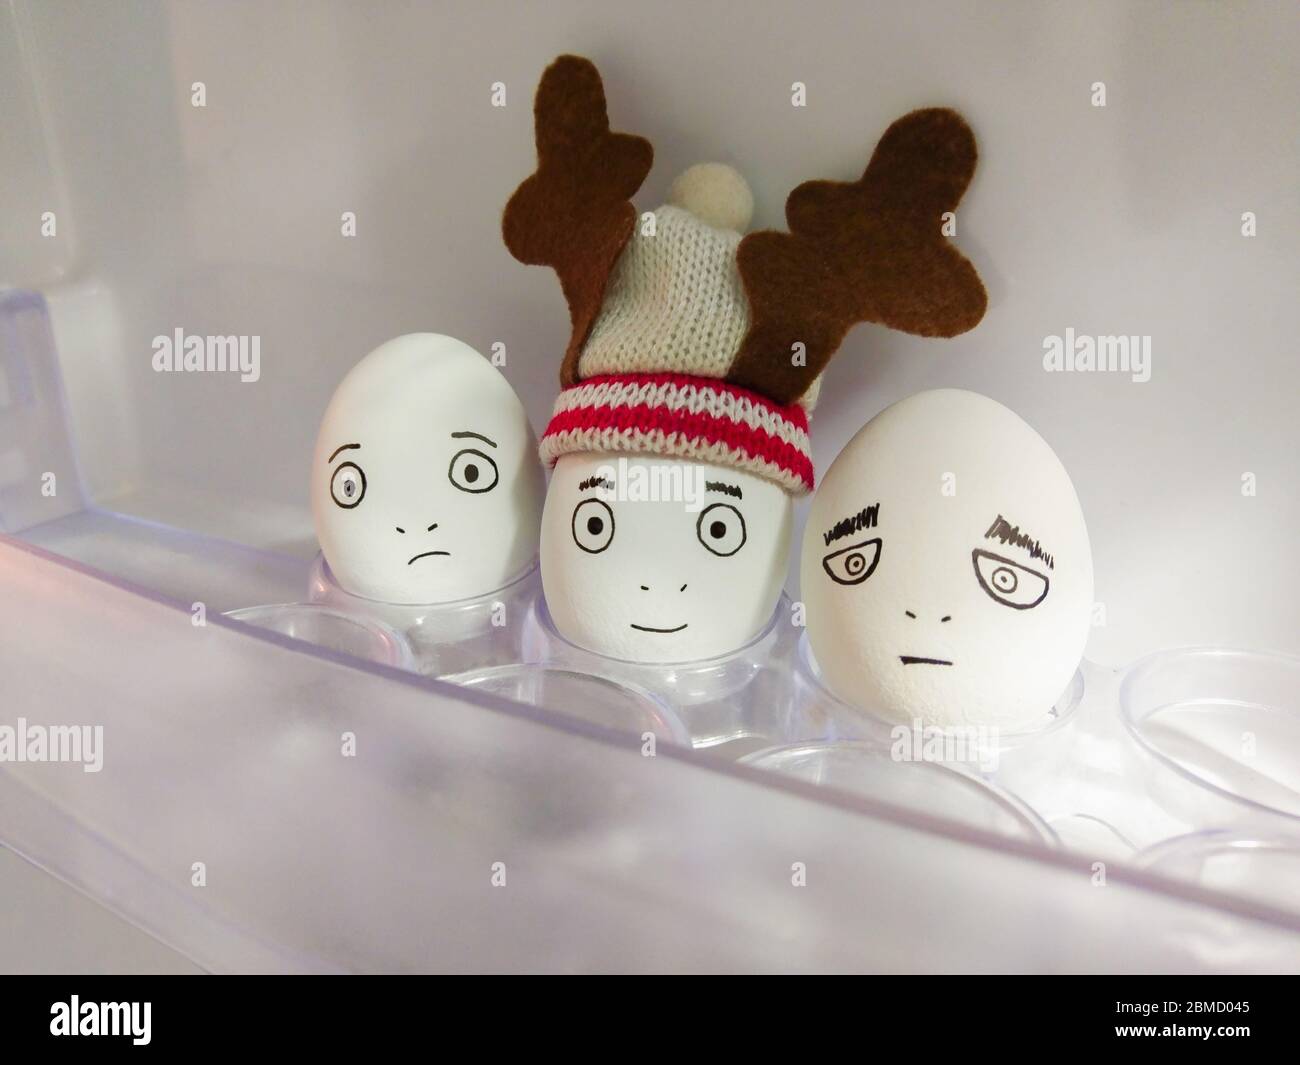 Drei weiße Hühnereier mit Gesichtern. Zentrales Ei trägt lustig warmen Hut mit Plüsch Geweih. Innenraum der Kühlschranktür. Lustige Dekorationsidee. Stockfoto